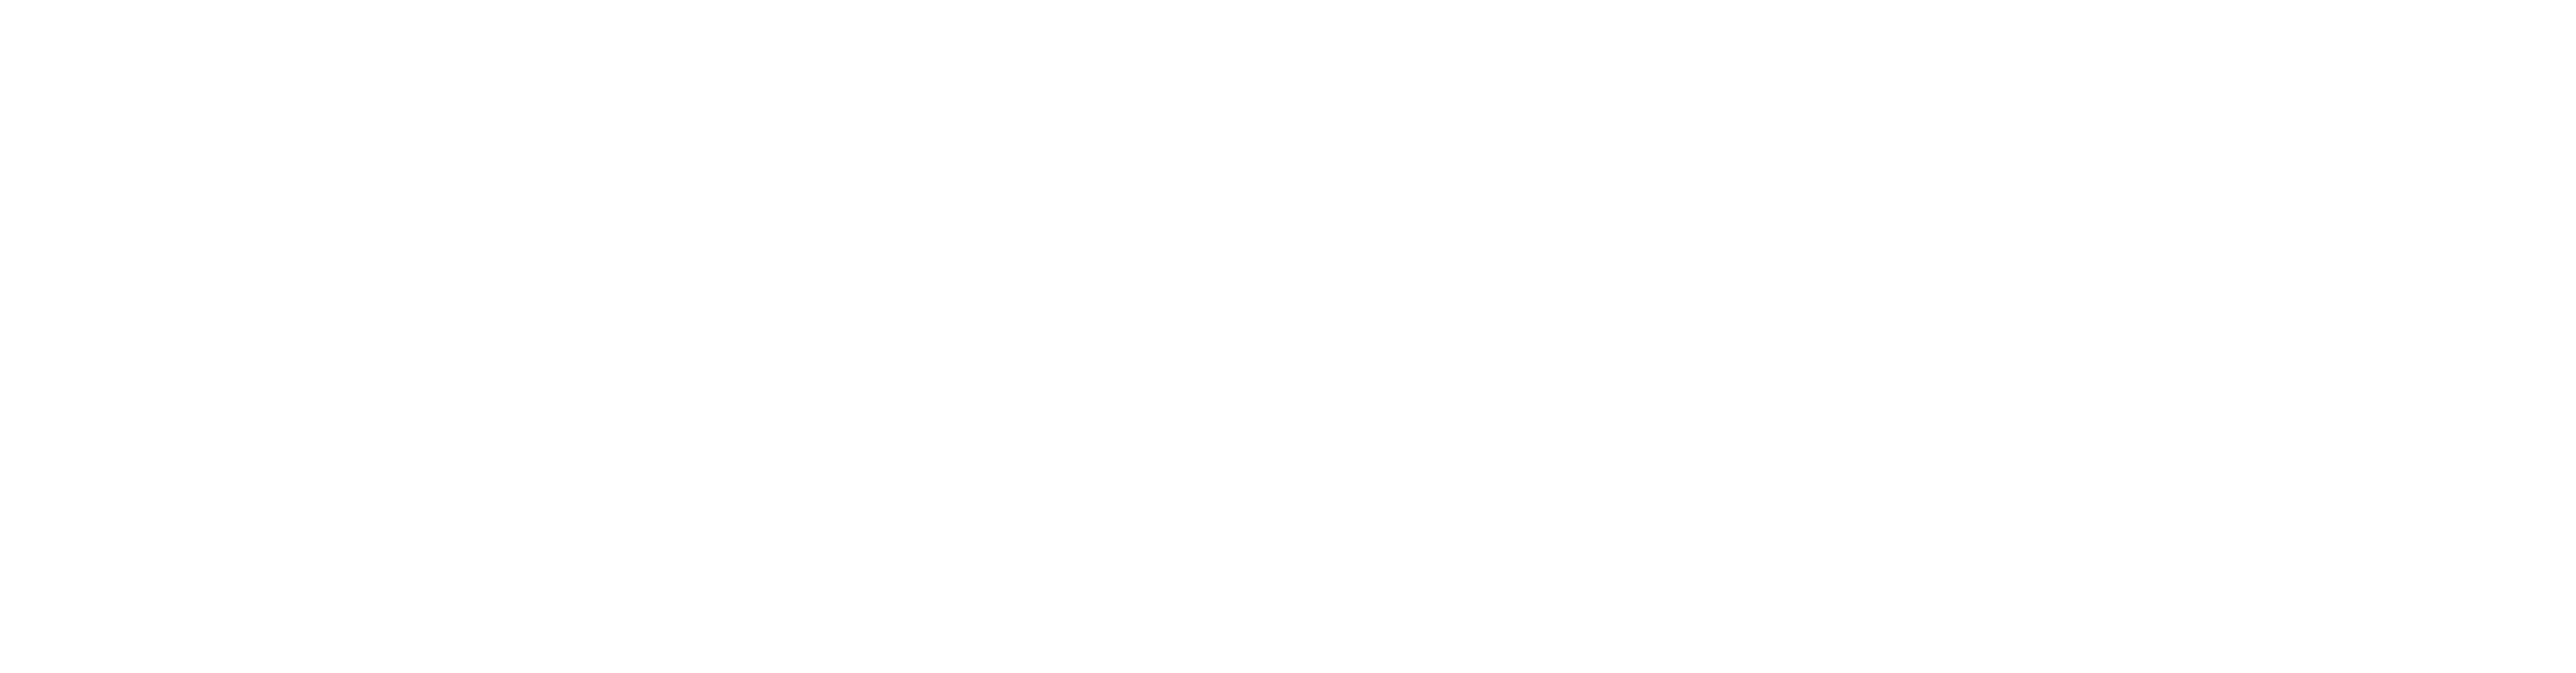 亚裔美国东北部中心白色标志